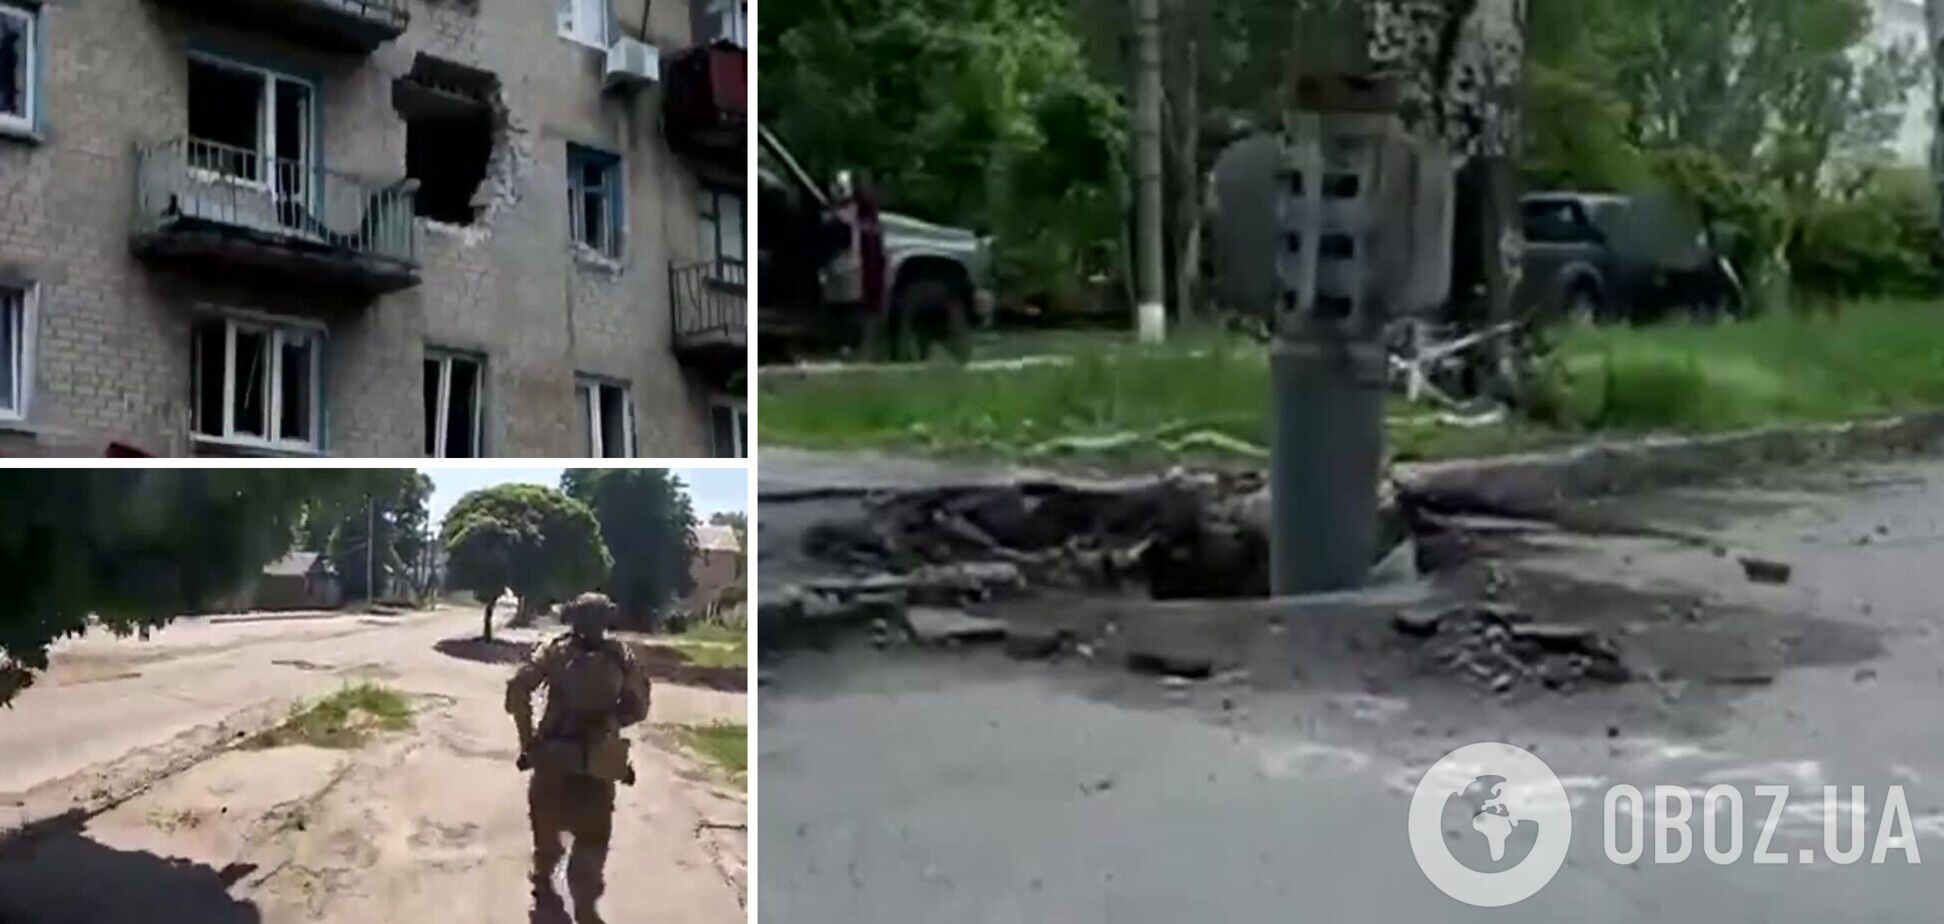 Окупанти накривають вогнем цілі квартали: у мережі показали руйнування у Лисичанську. Відео